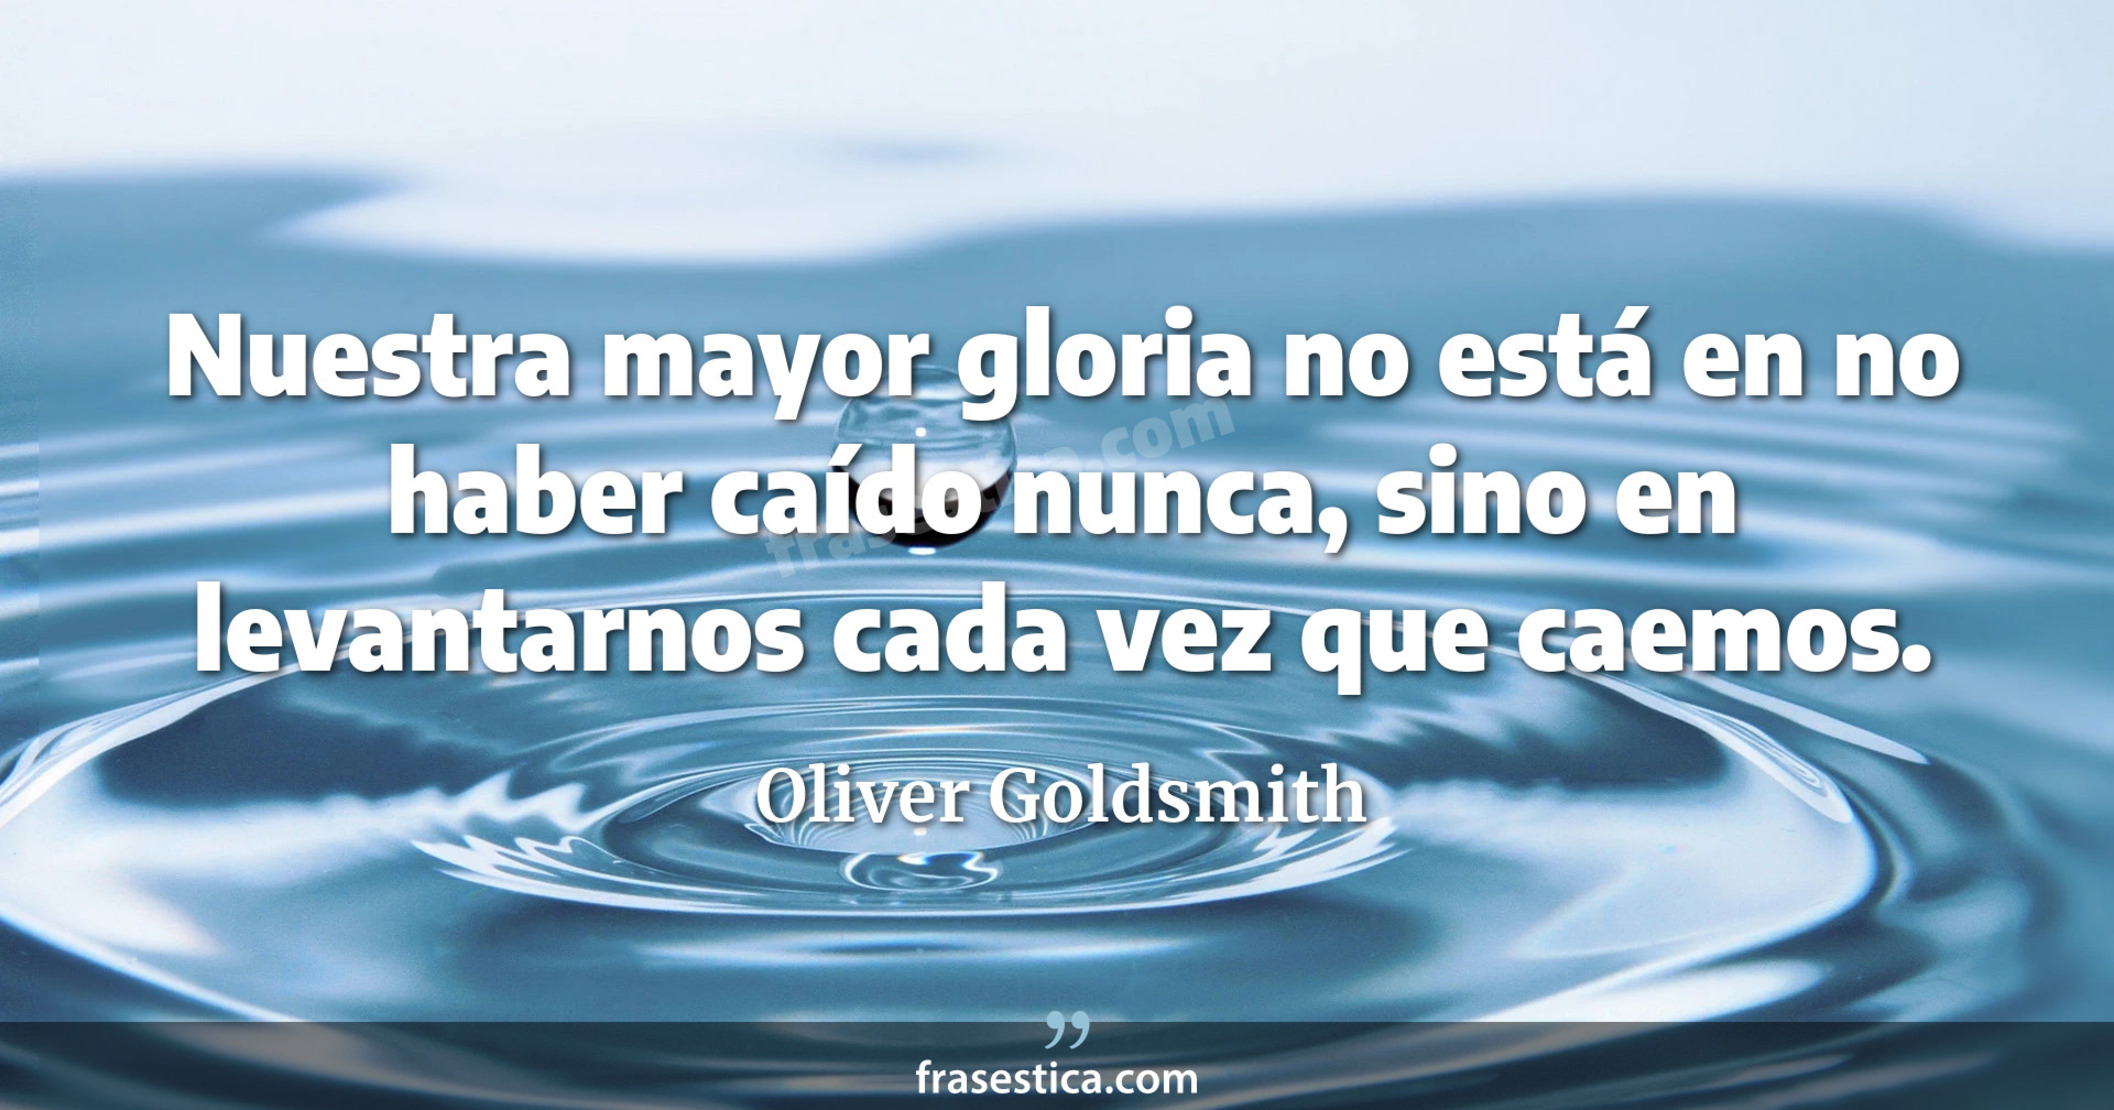 Nuestra mayor gloria no está en no haber caído nunca, sino en levantarnos cada vez que caemos. - Oliver Goldsmith